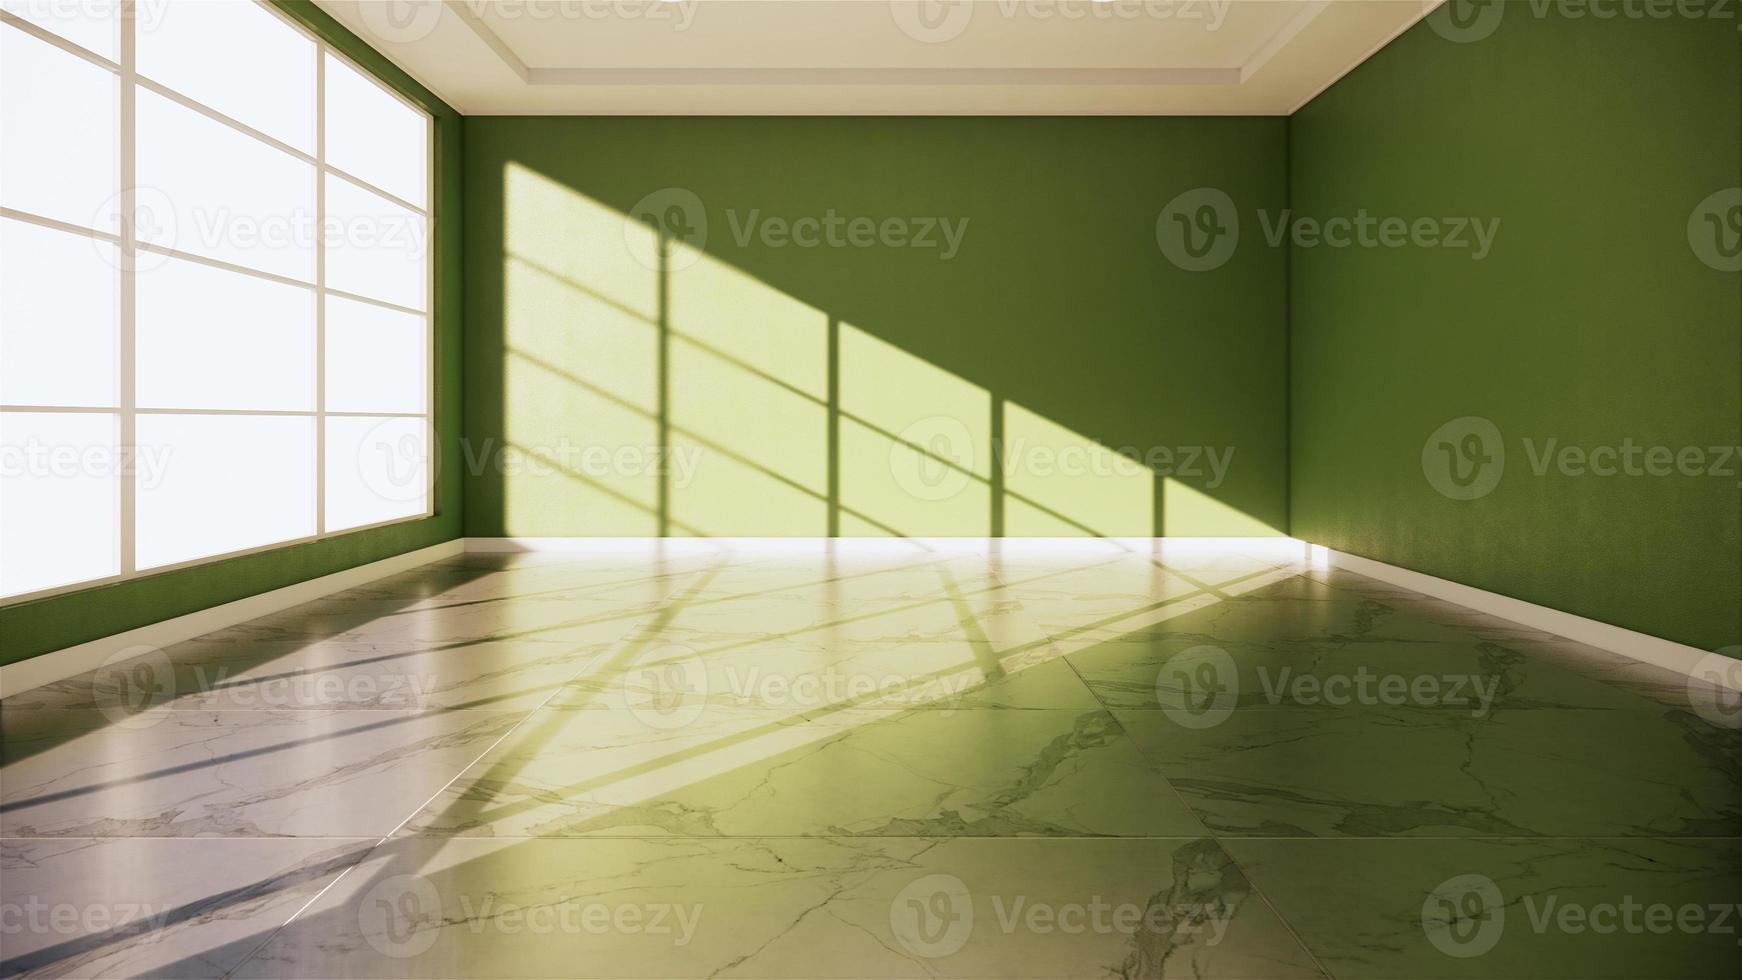 Interior de la habitación verde - habitación vacía de piso de granito de piedra natural Representación 3D foto